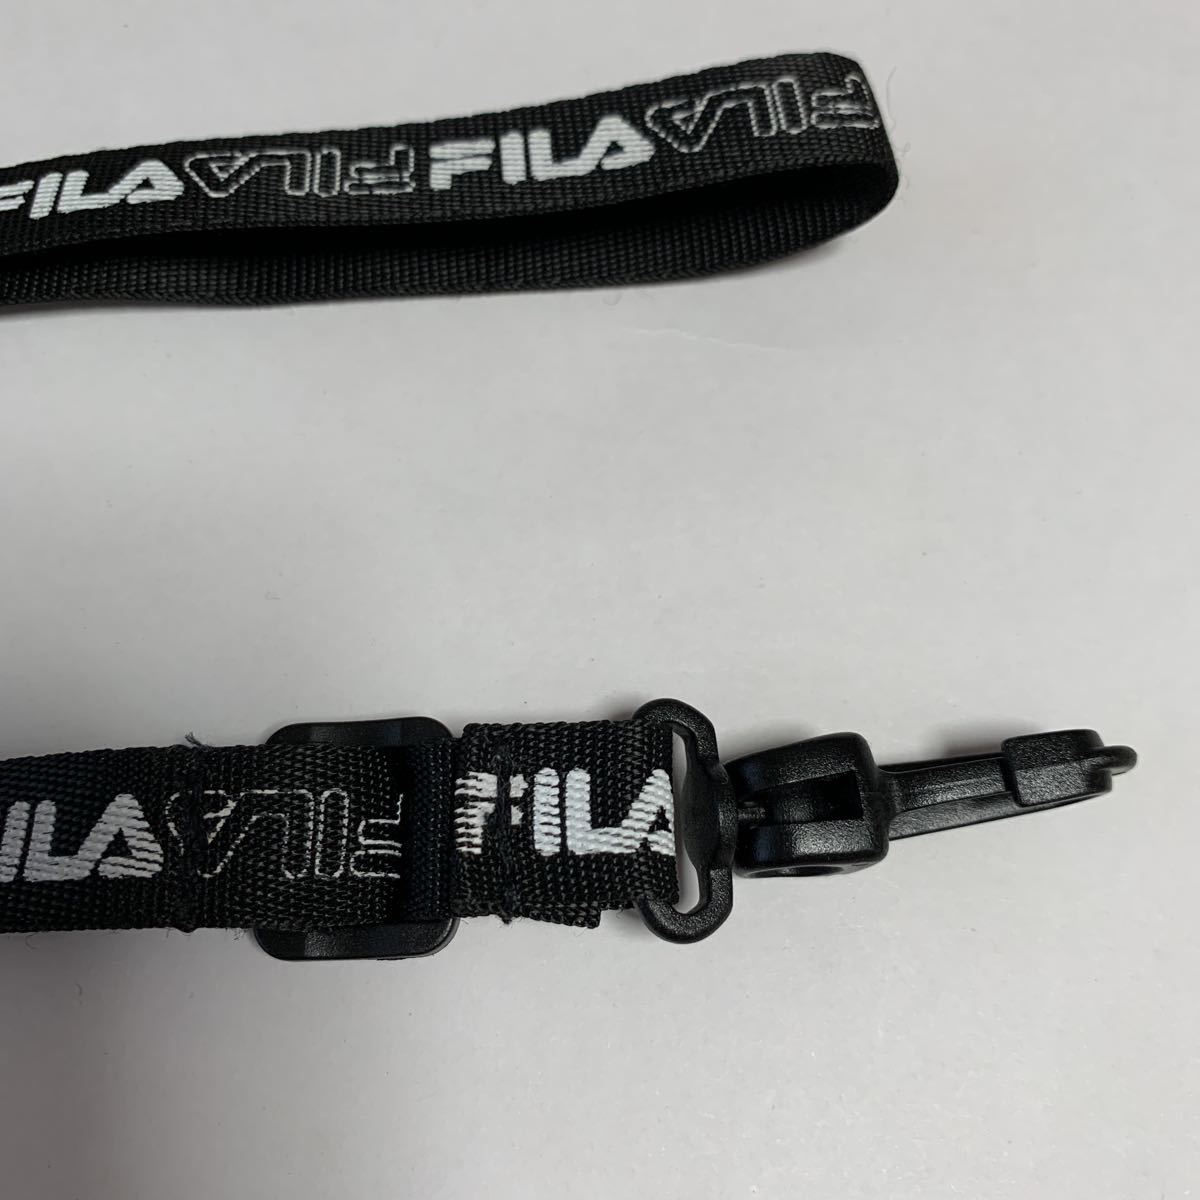  filler FILA полоса длина 51cm применение различный новый товар бесплатная доставка 